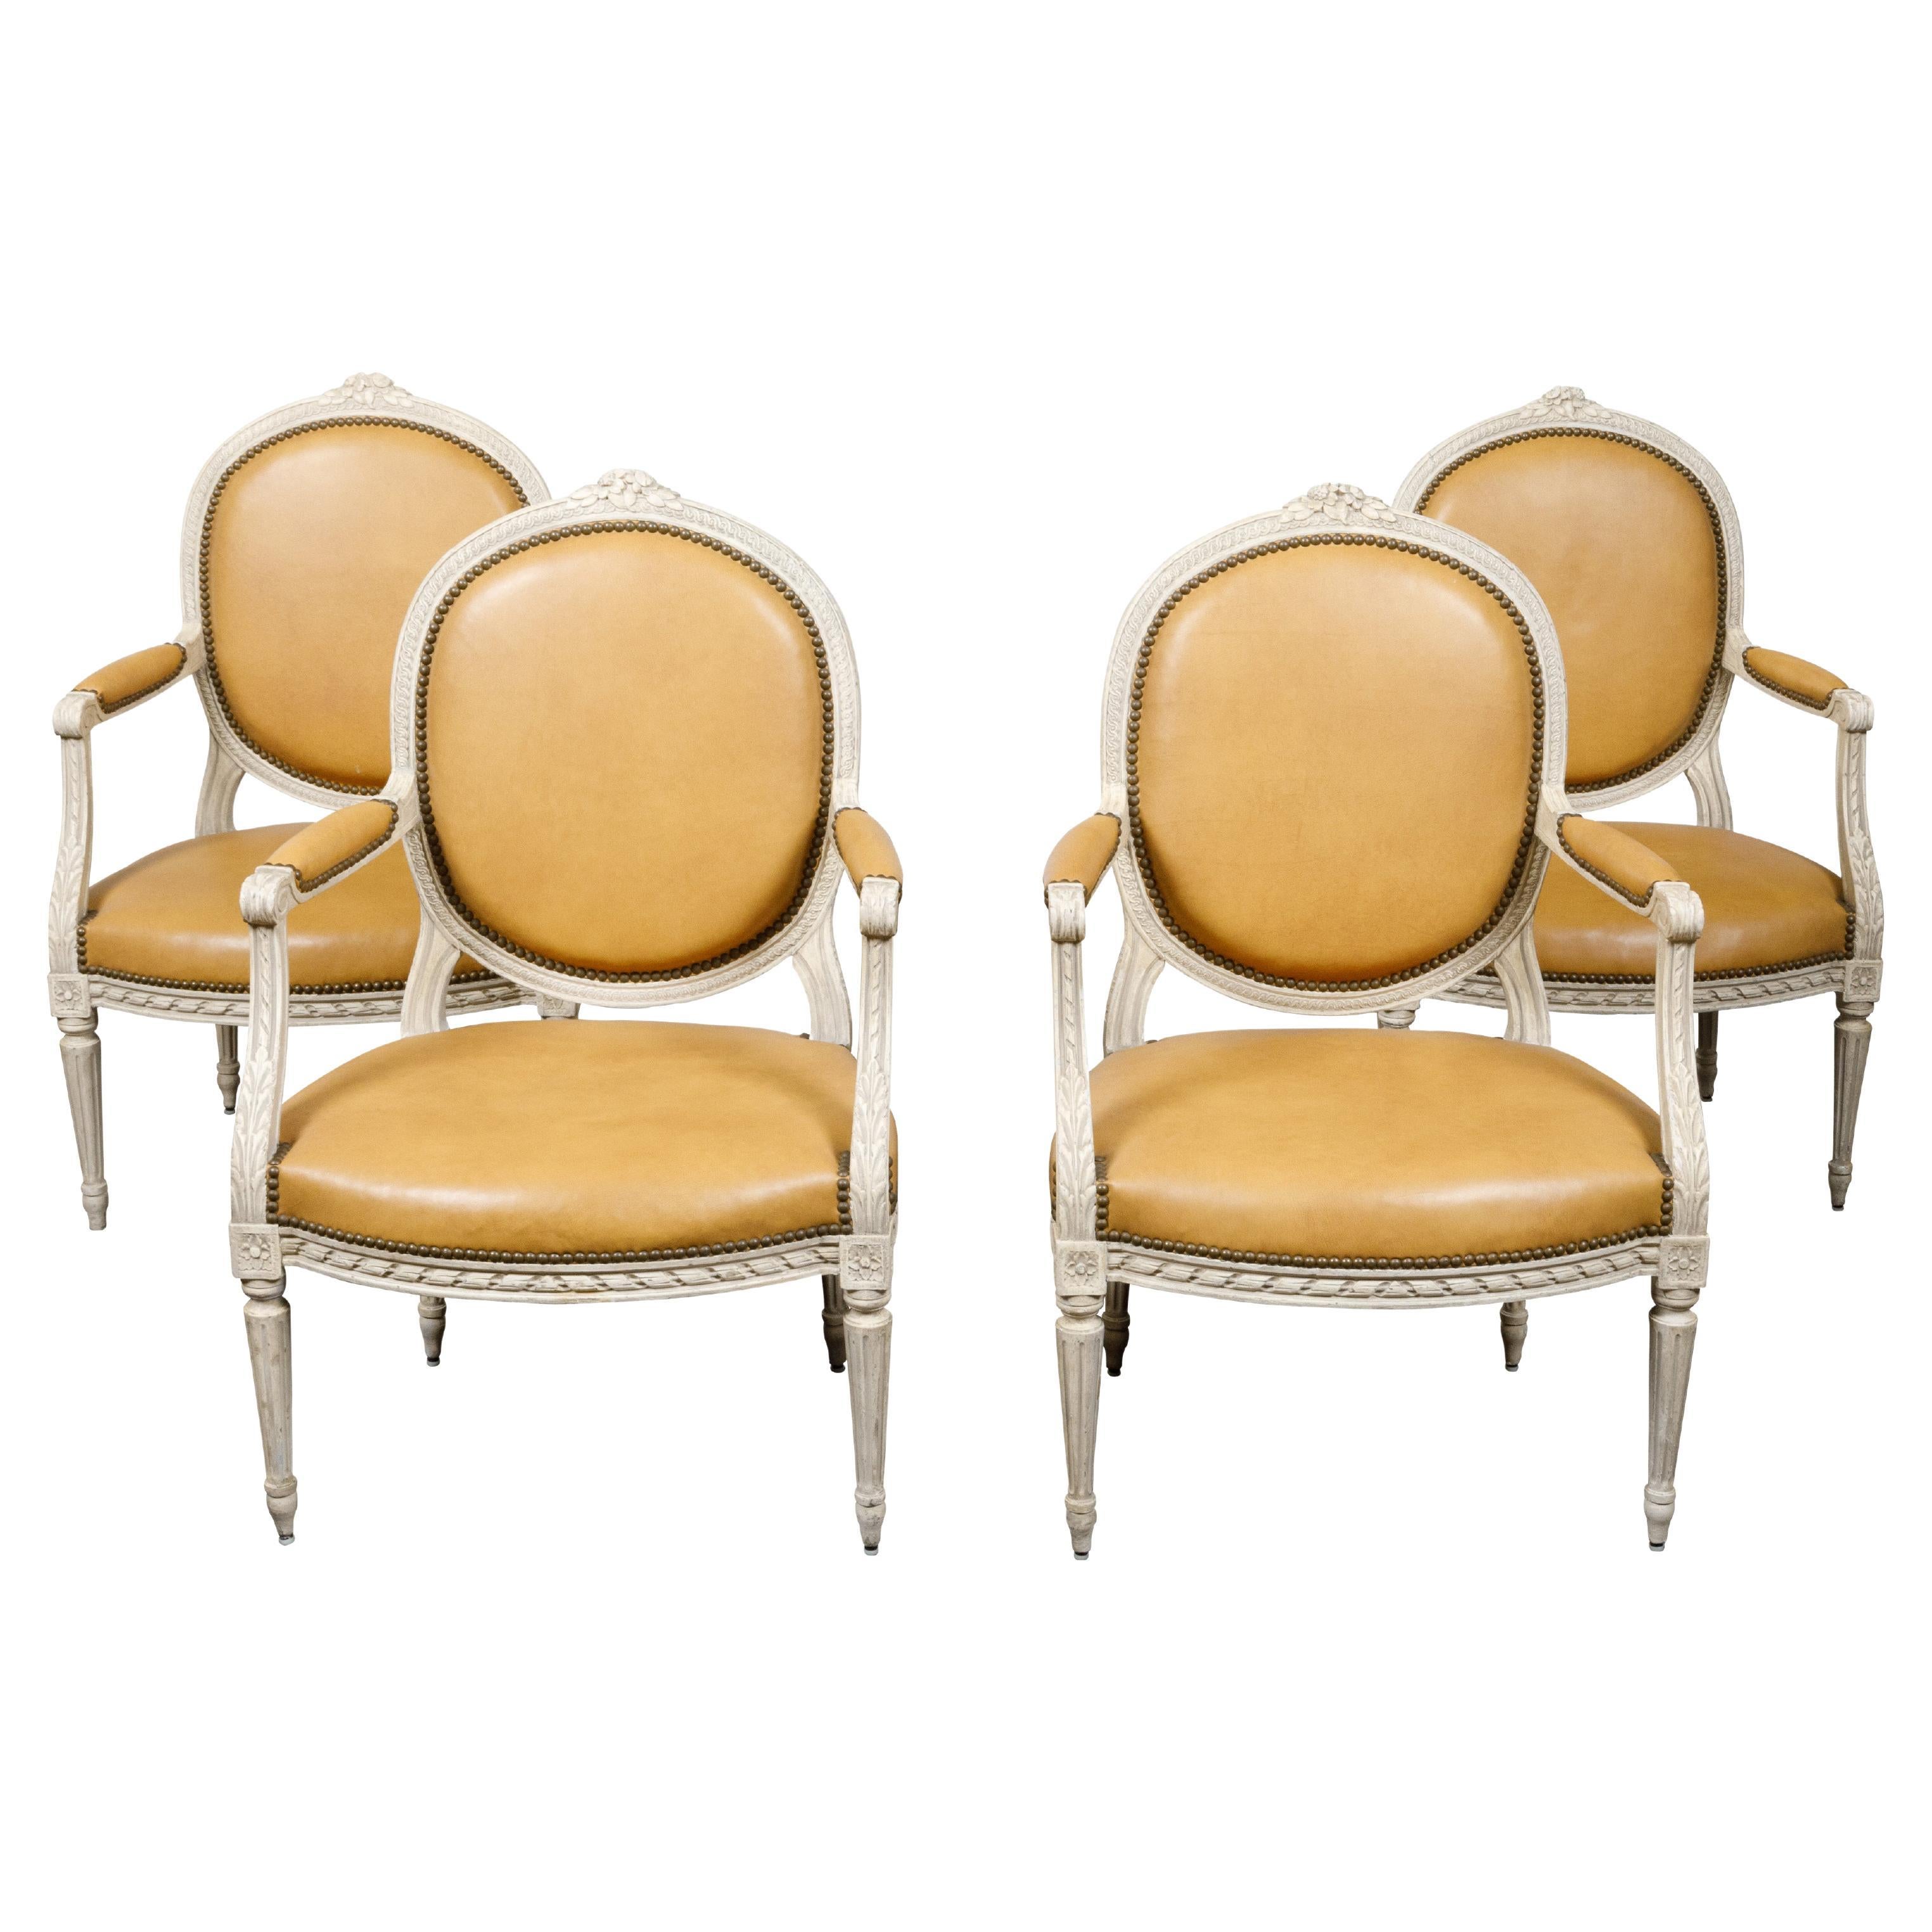 Satz von vier französischen Sesseln im Louis-XVI-Stil um 1900 mit ovaler, bemalter und geschnitzter Rückenlehne